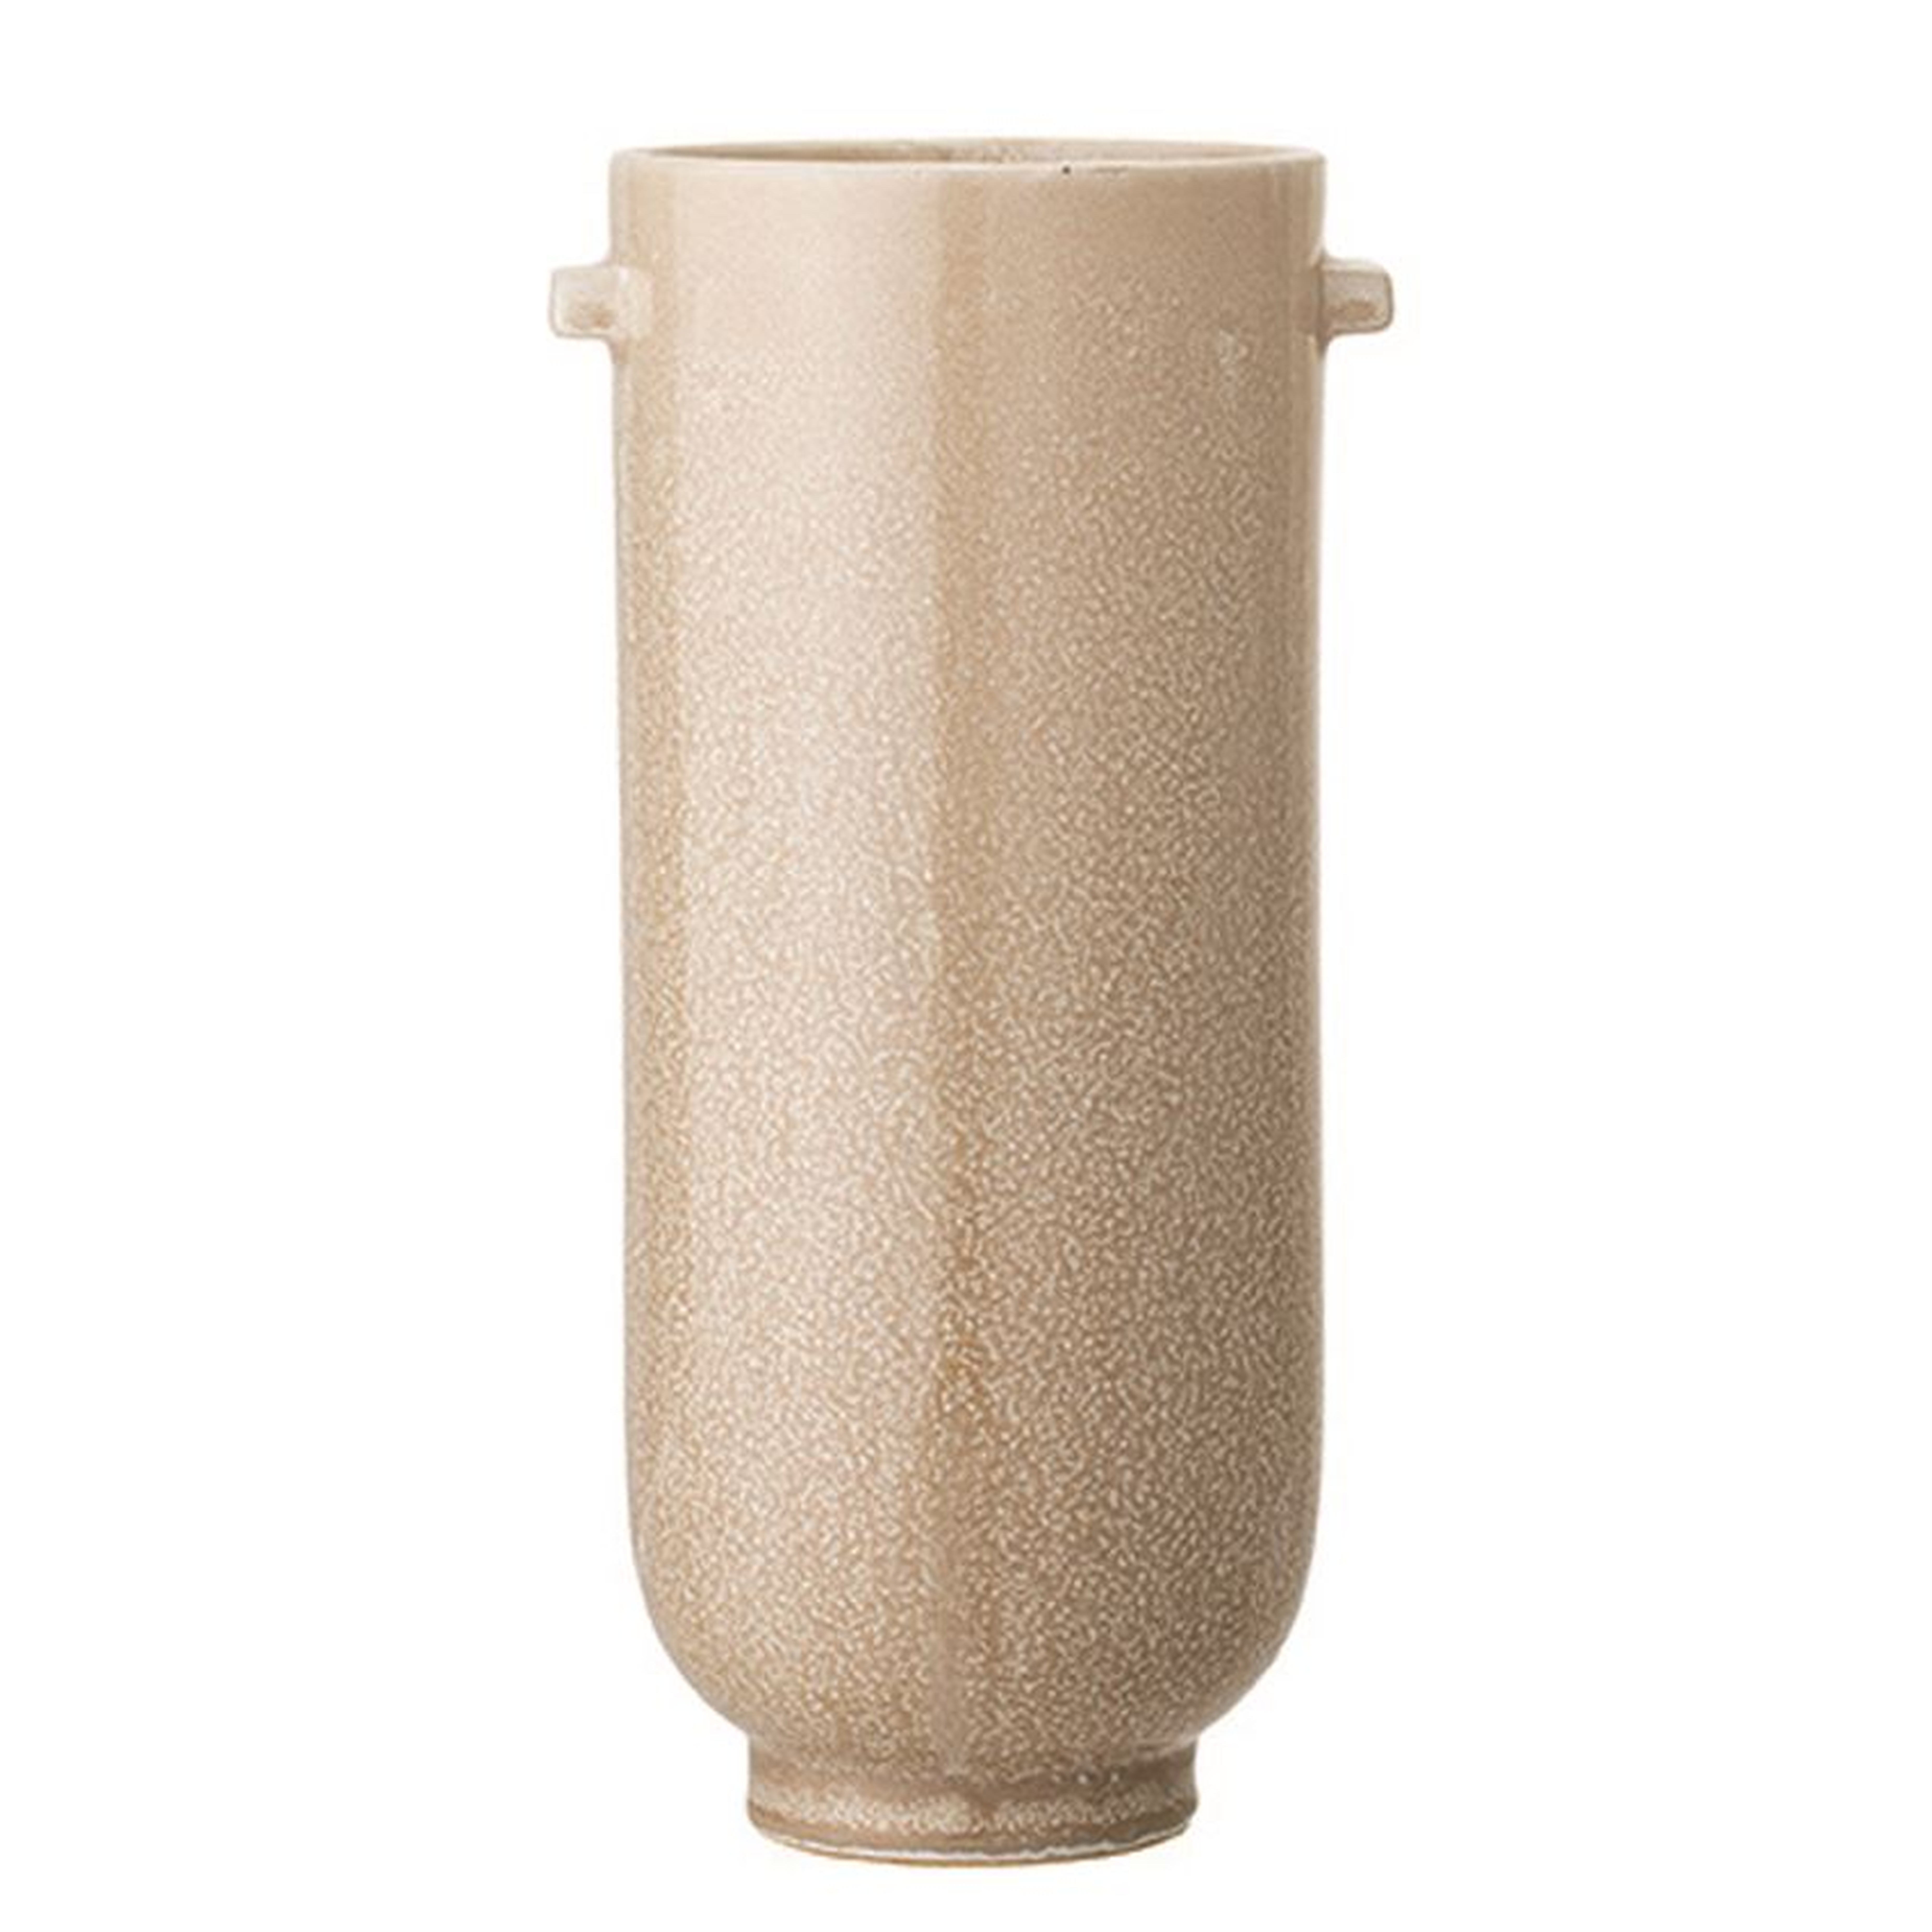 Stoneware Vase with Reactive Glaze, Cream - Moss & Wilder